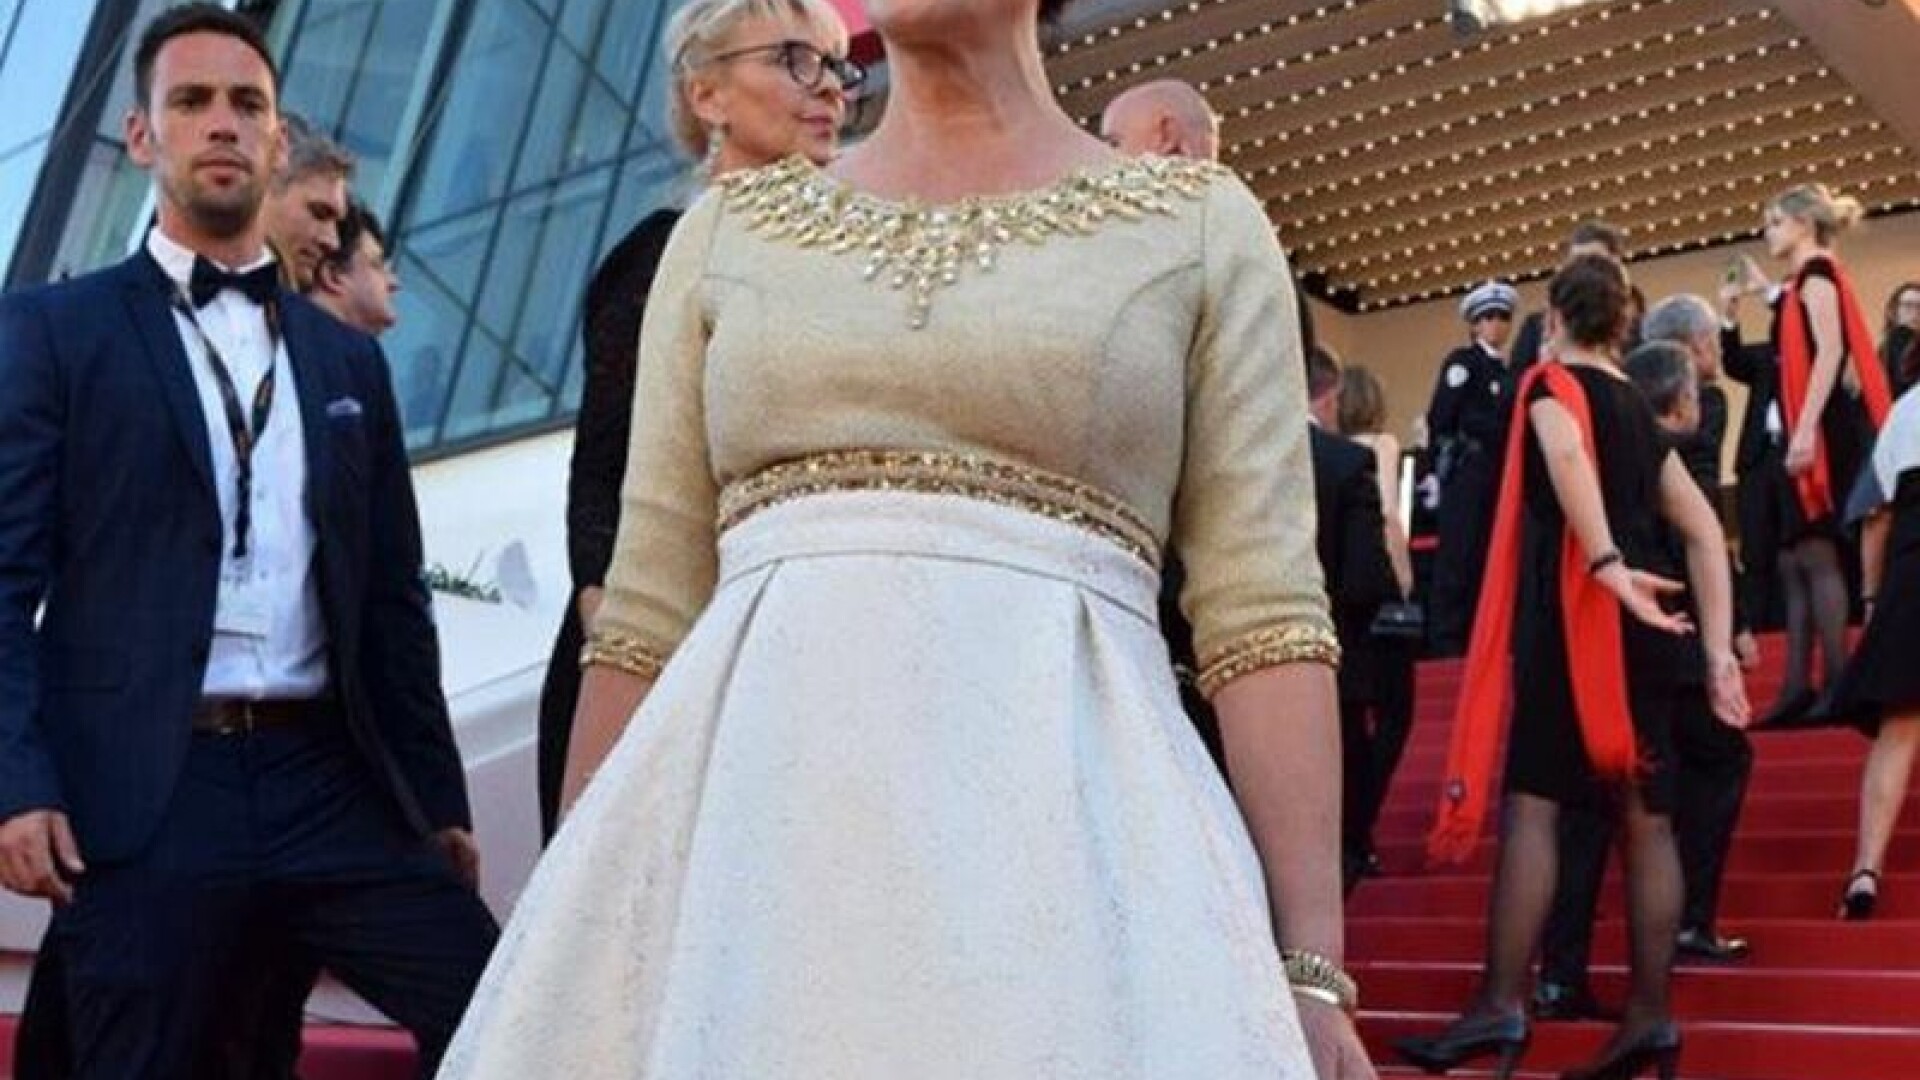 Rochia care a starnit reactii negative la Cannes